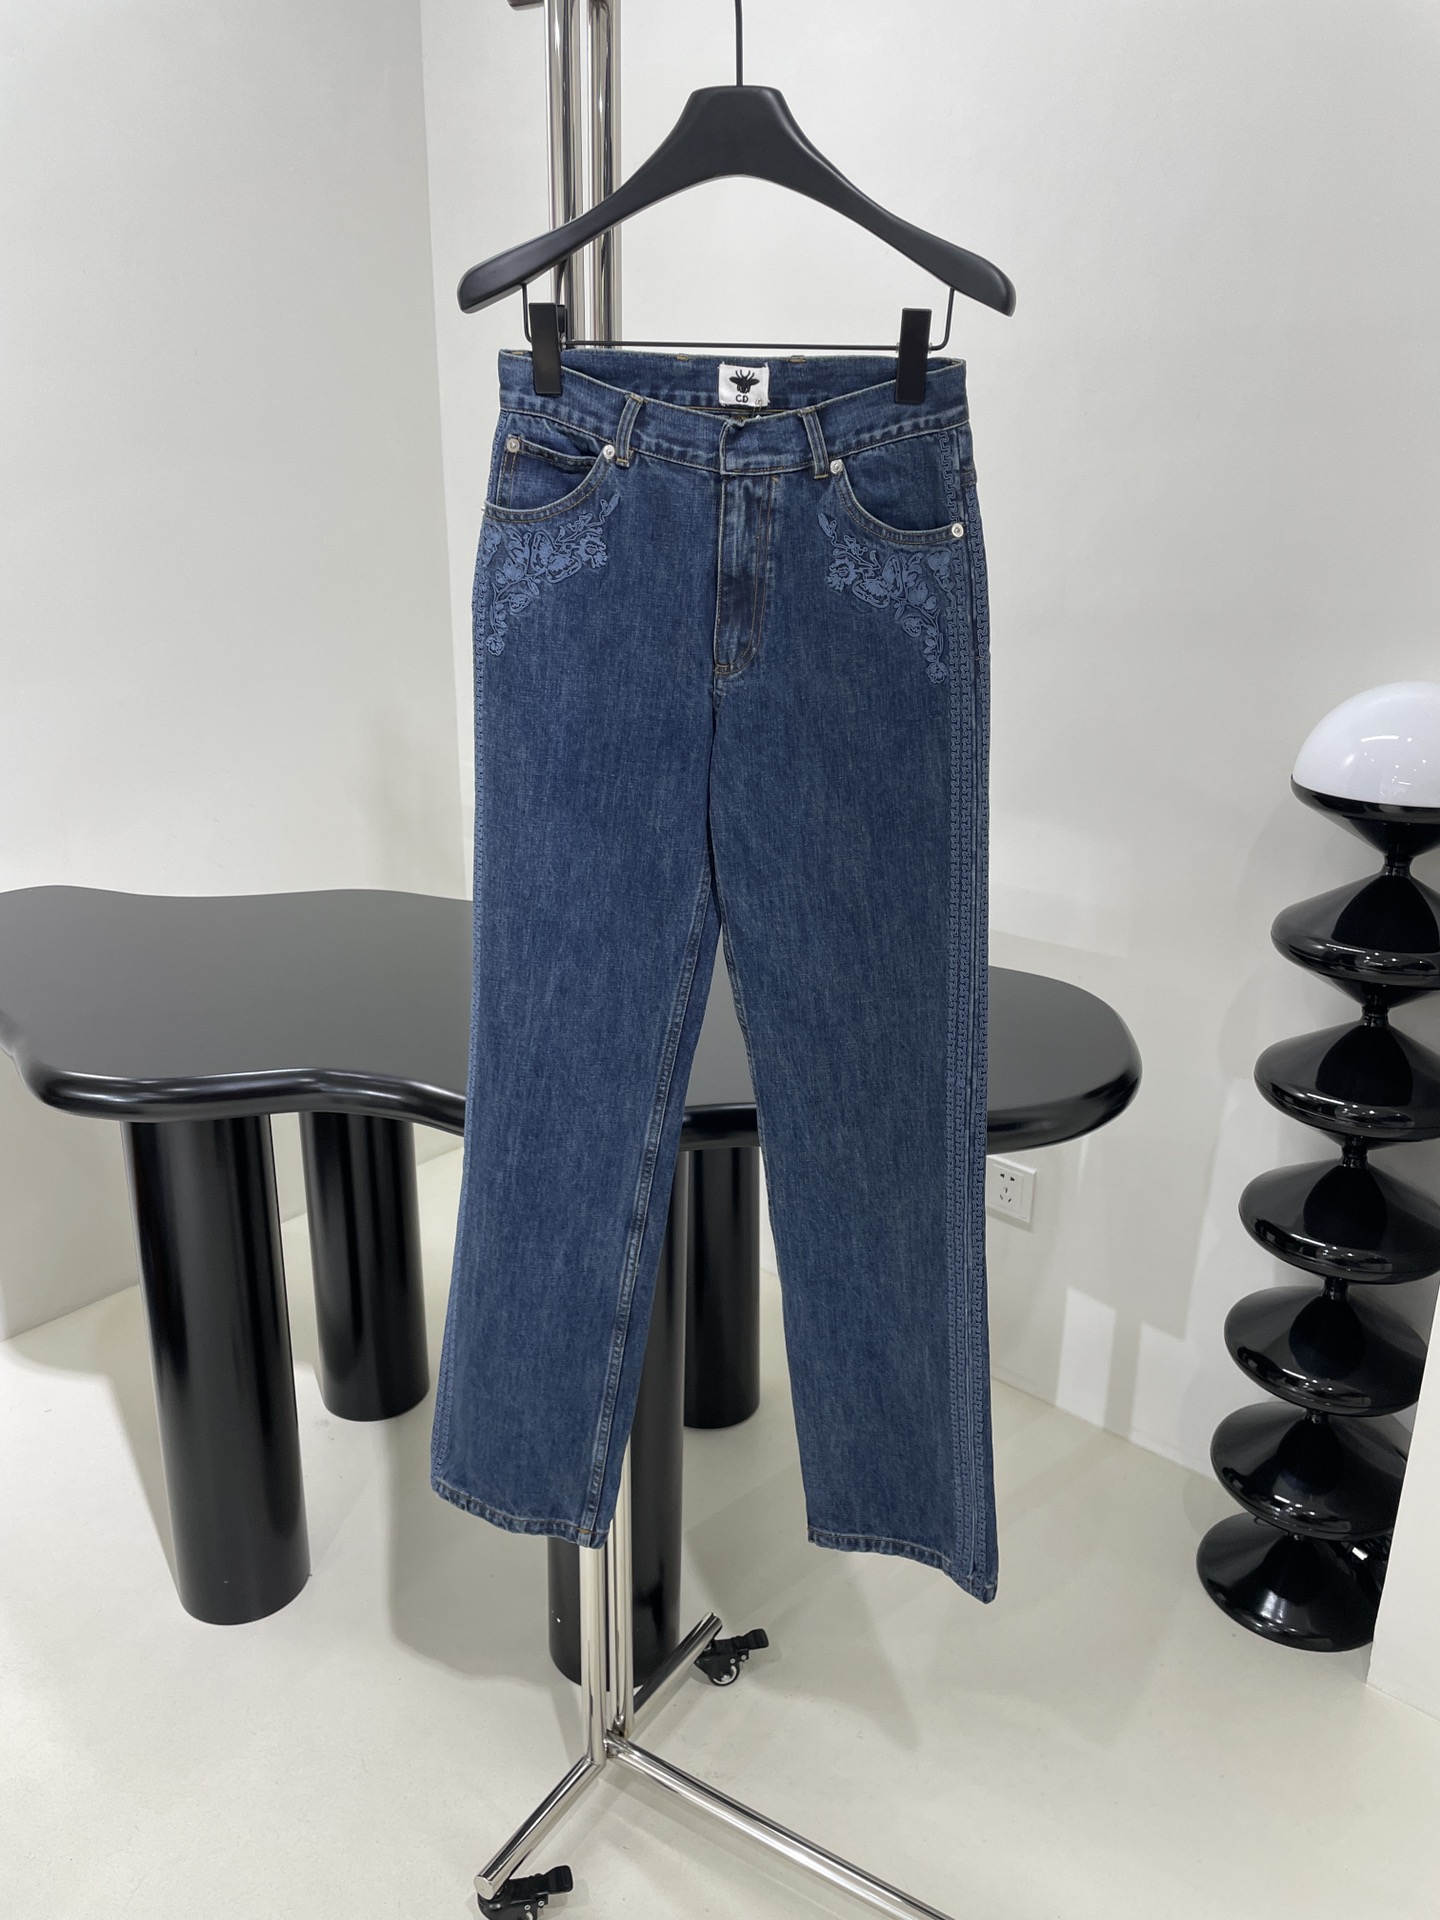 דיור AAAAA
 בגדים ג'ינס כחול דנים התחבורה קוטן אוסף האביב